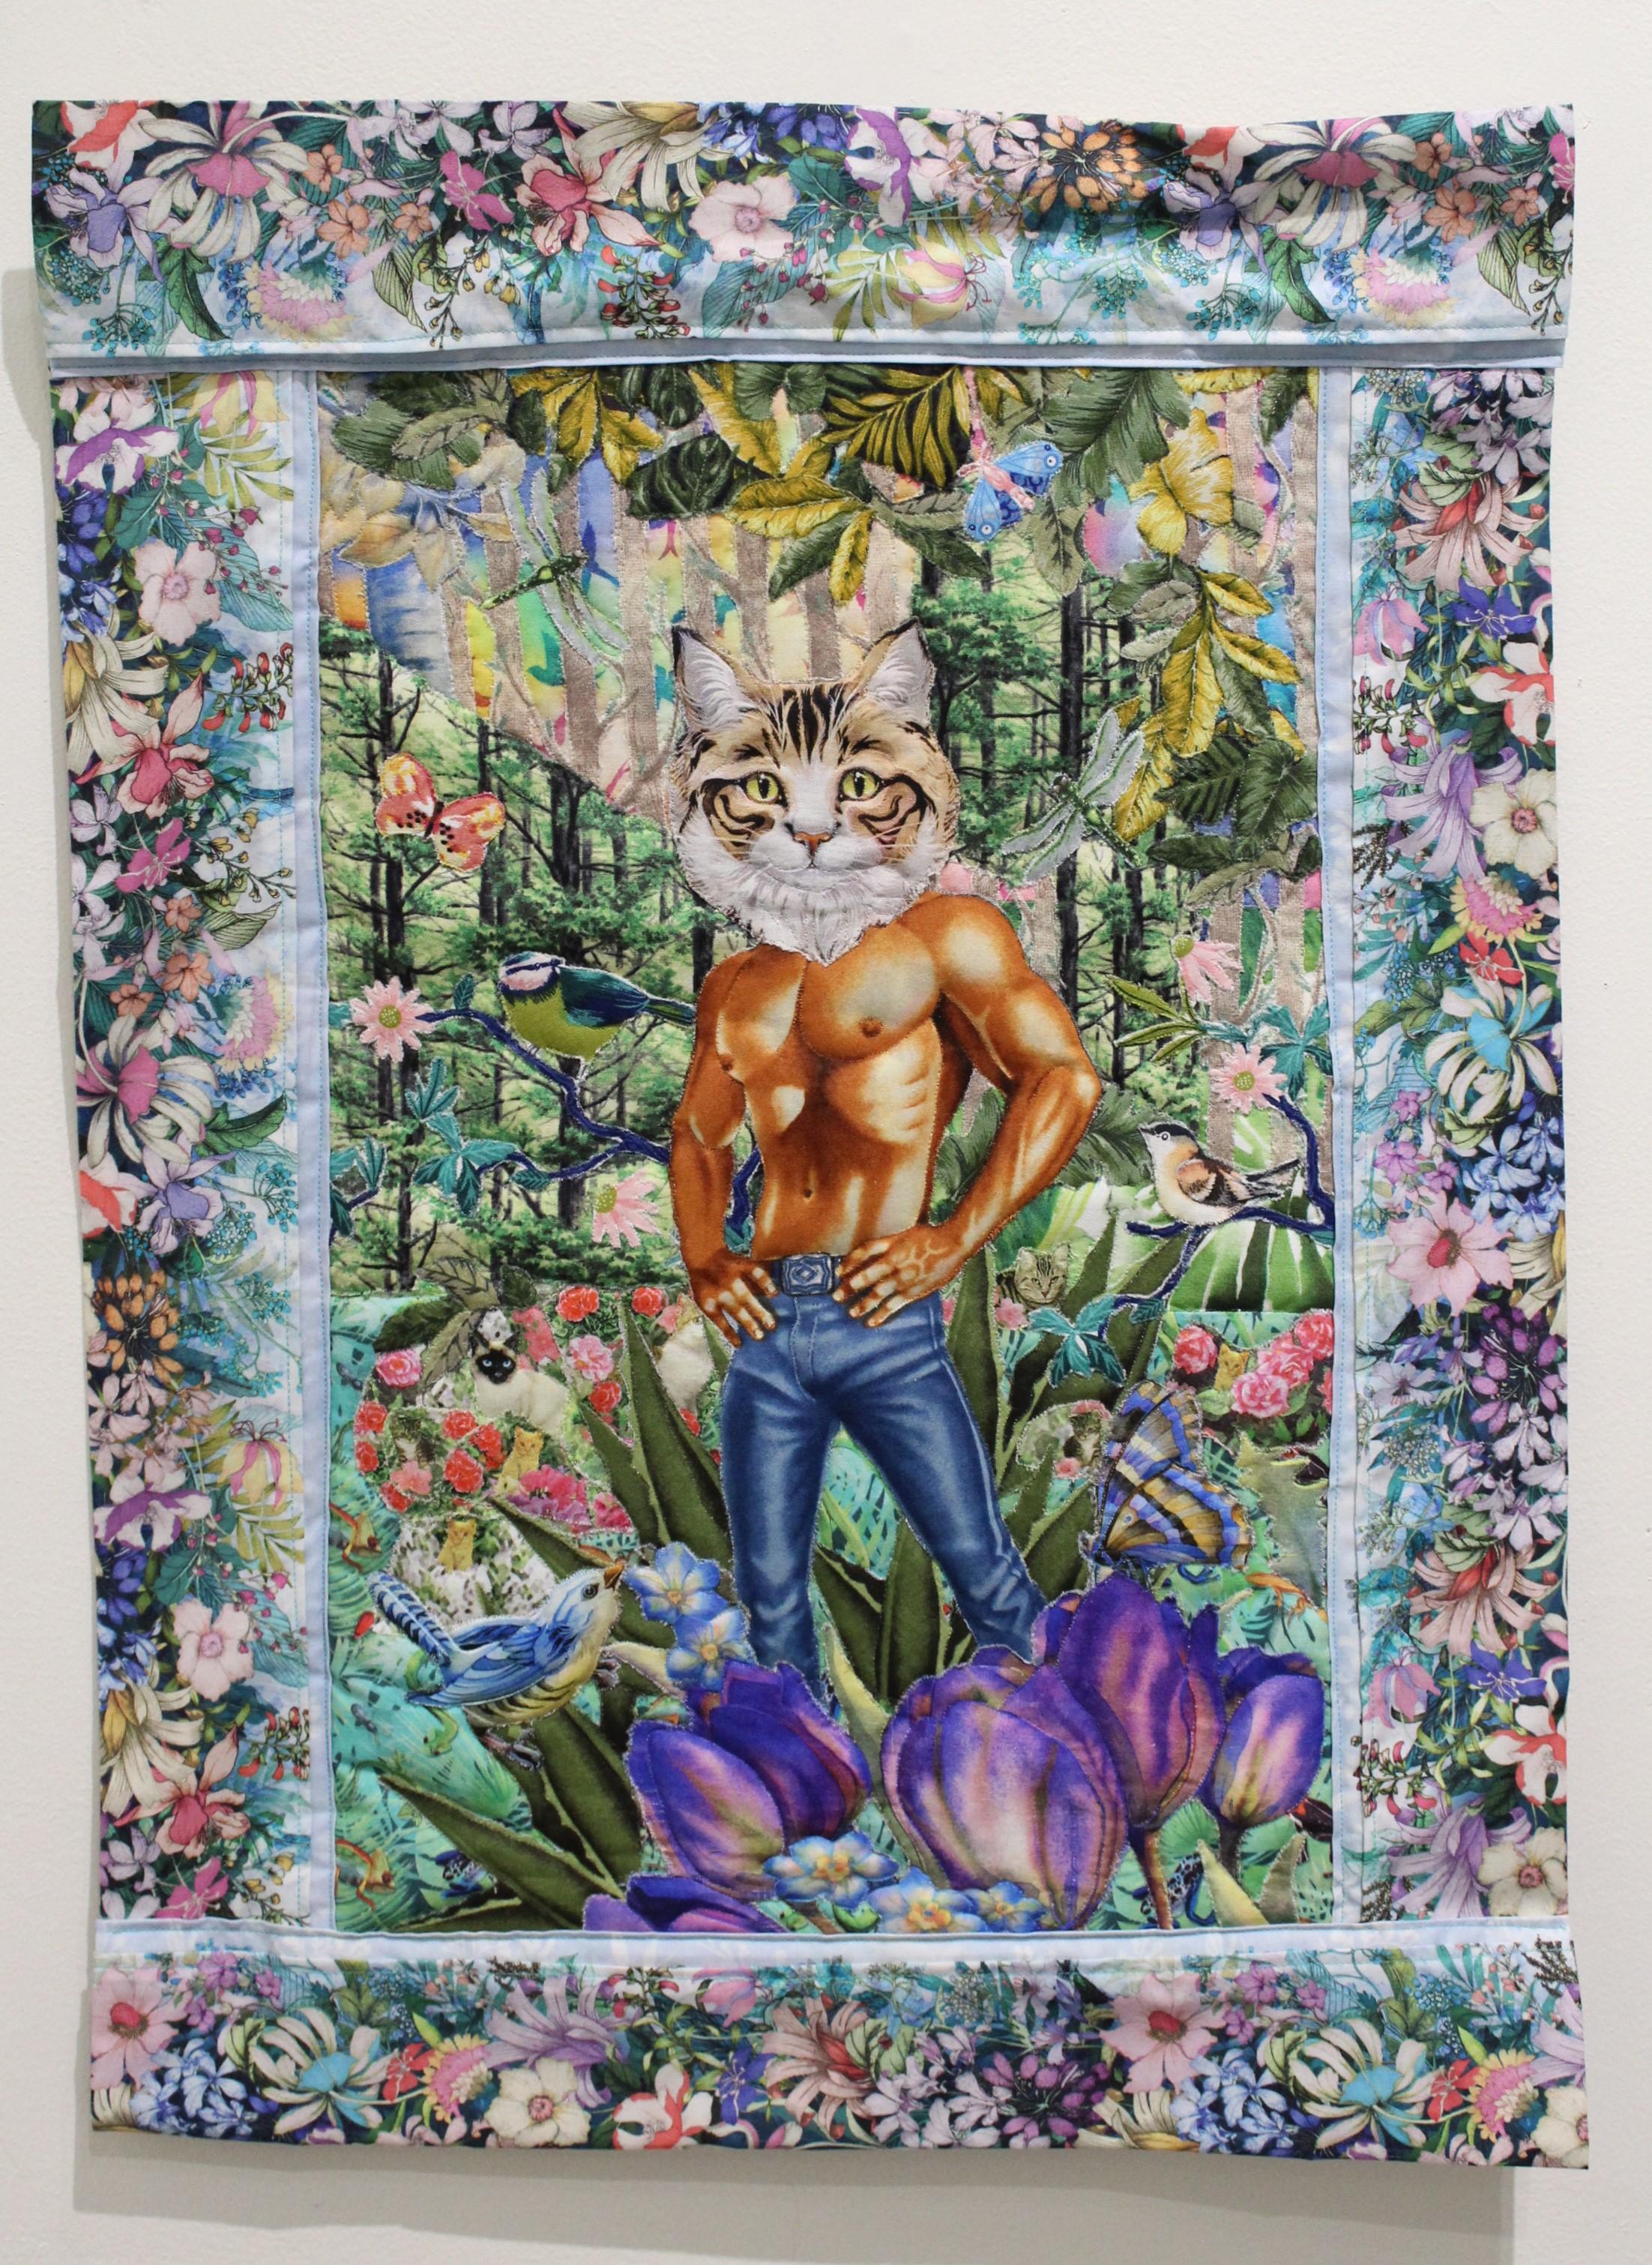 Forest Catboyfriend - Art by Jane Tardo